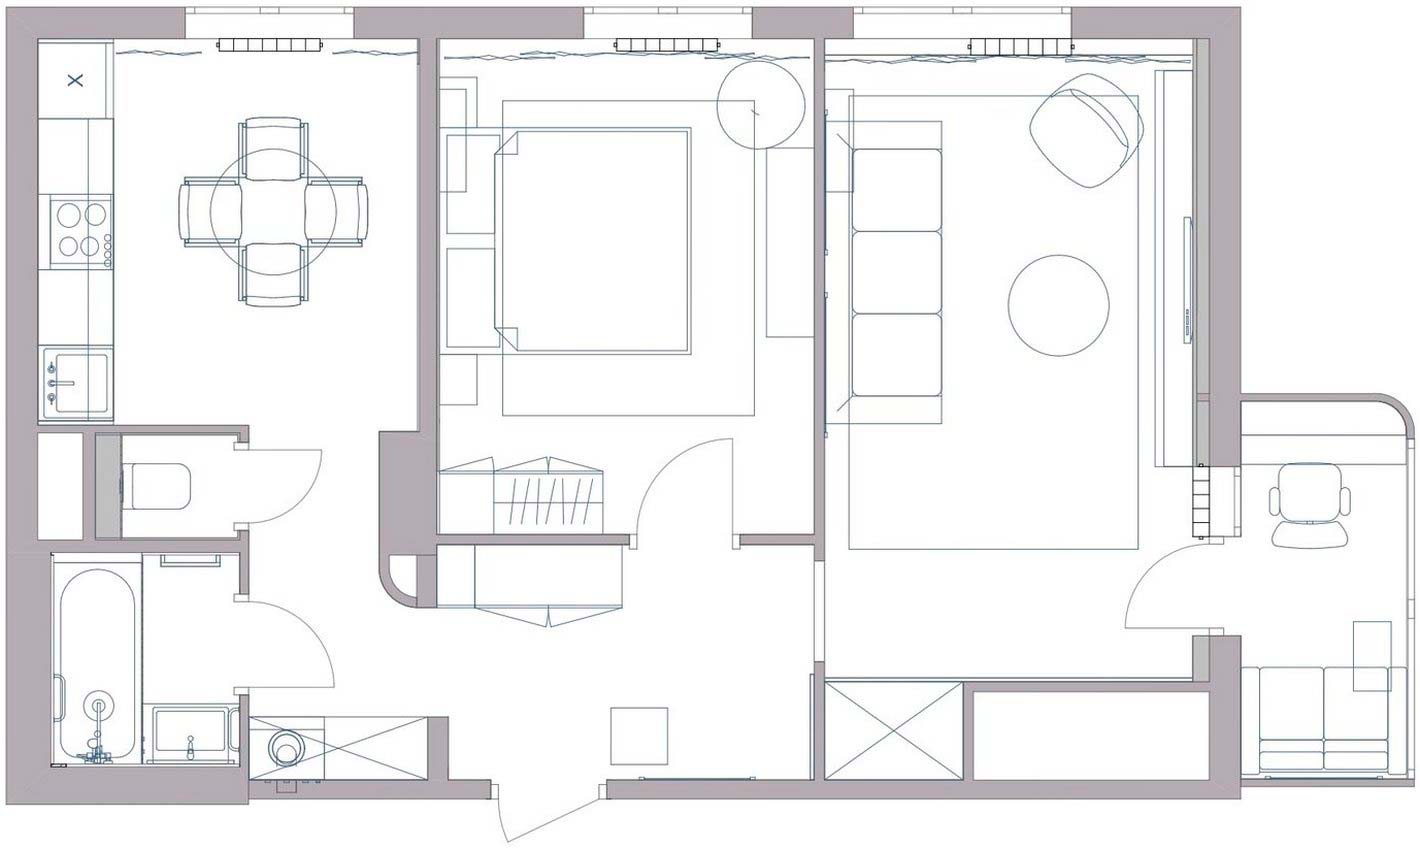 Elegáns sötét konyhabútor, modern, kontrasztos dekoráció 54m2-es, háromszobás lakásban